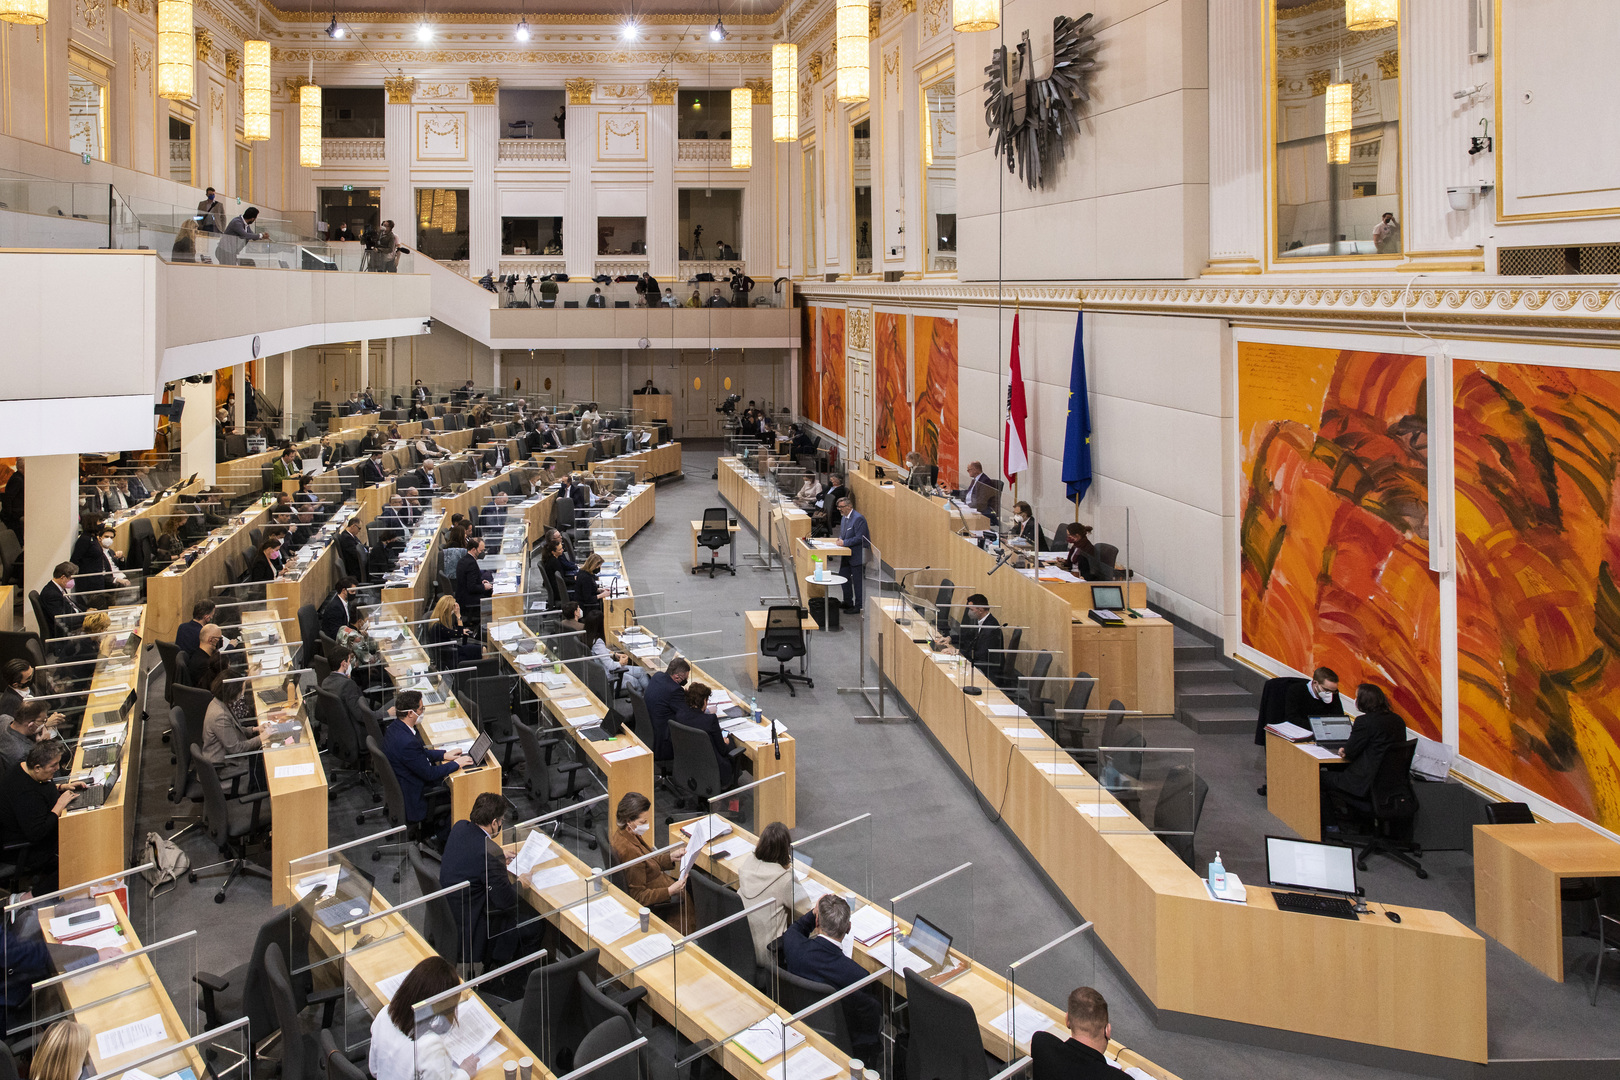 البرلمان النمساوي يقر قانونا يفرض التلقيح الإلزامي ضد كورونا في خطوة غير مسبوقة أوروبيا